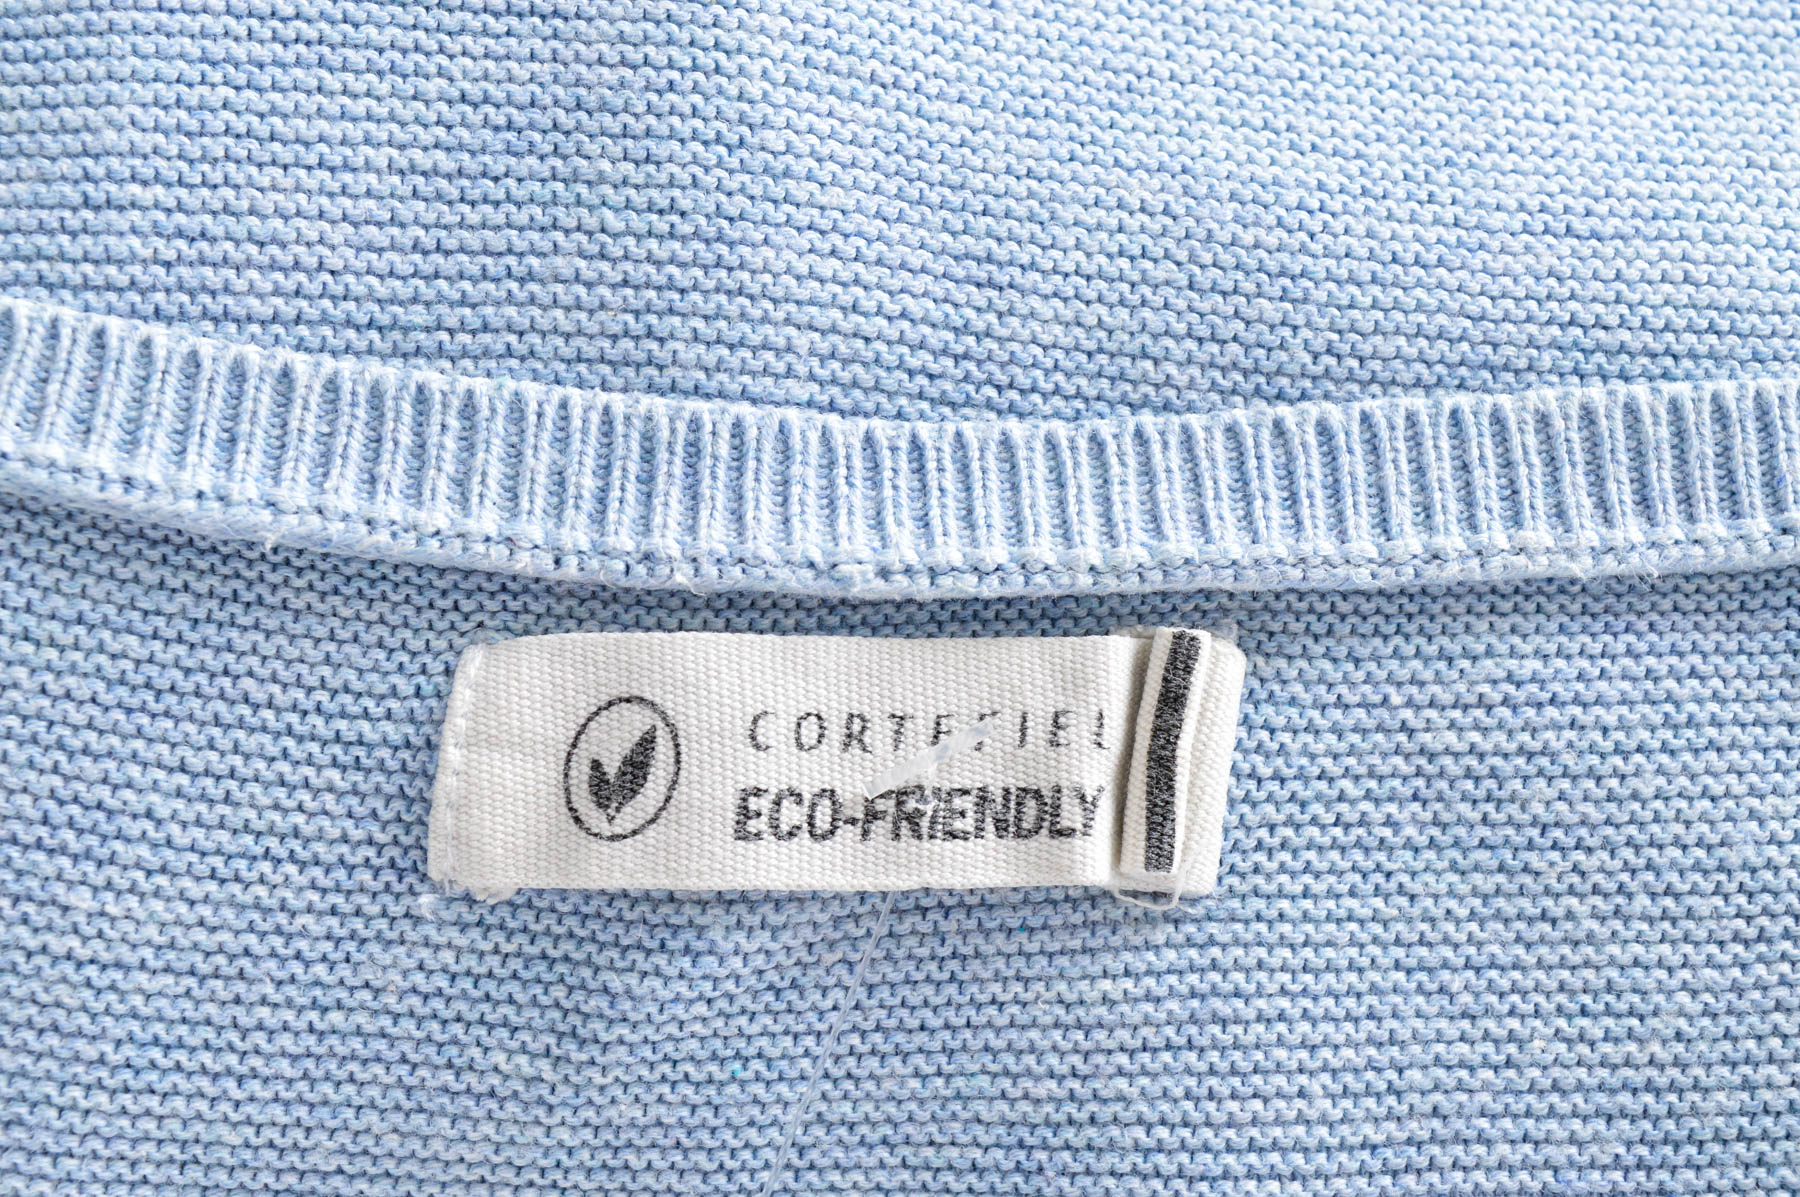 Дамска тениска - Cortefiel - 2